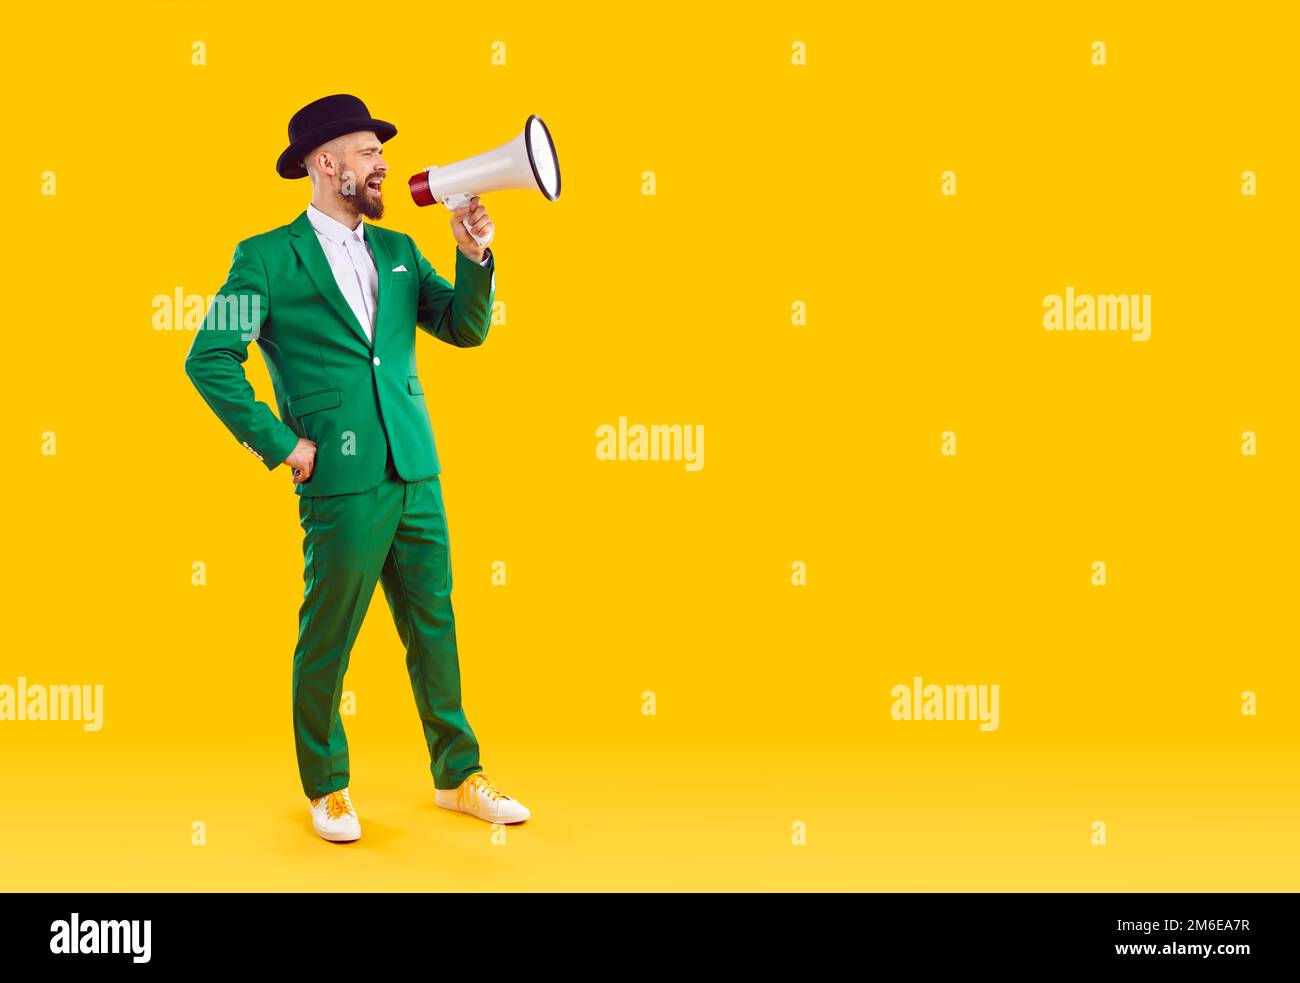 Mann im grünen Anzug macht Durchsage durch Megafon auf gelbem Hintergrund Stockfoto